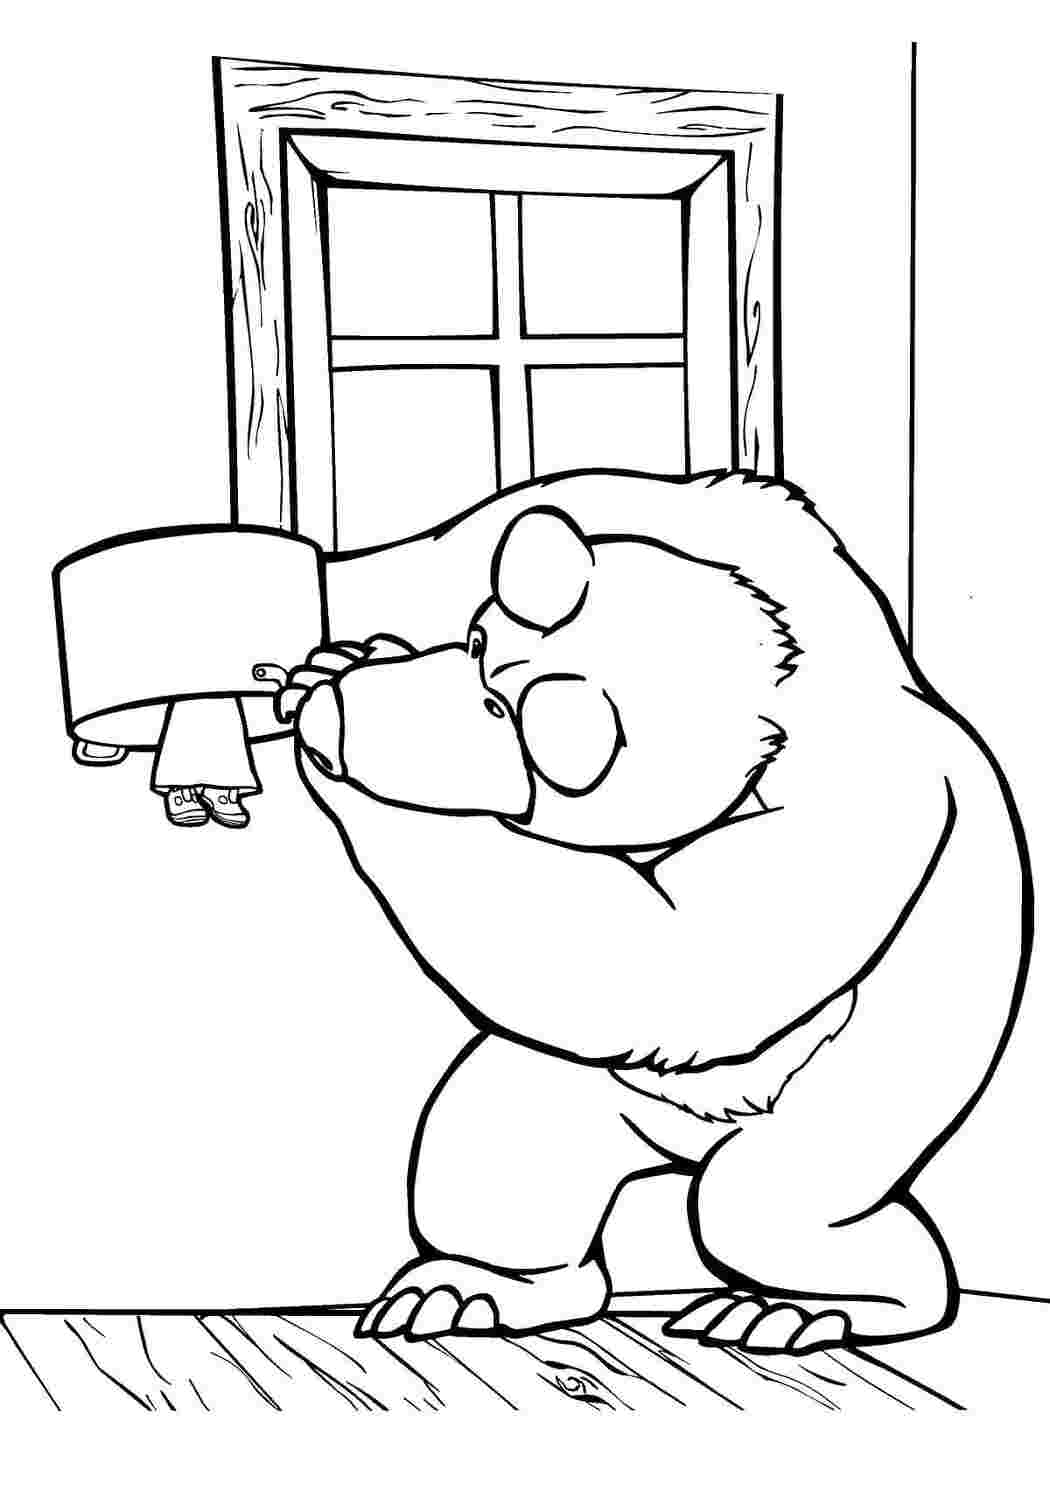 Раскраски Раскраски для детей про озорную Машу из мультфильма Маша и медведь  Мишка ищет машу